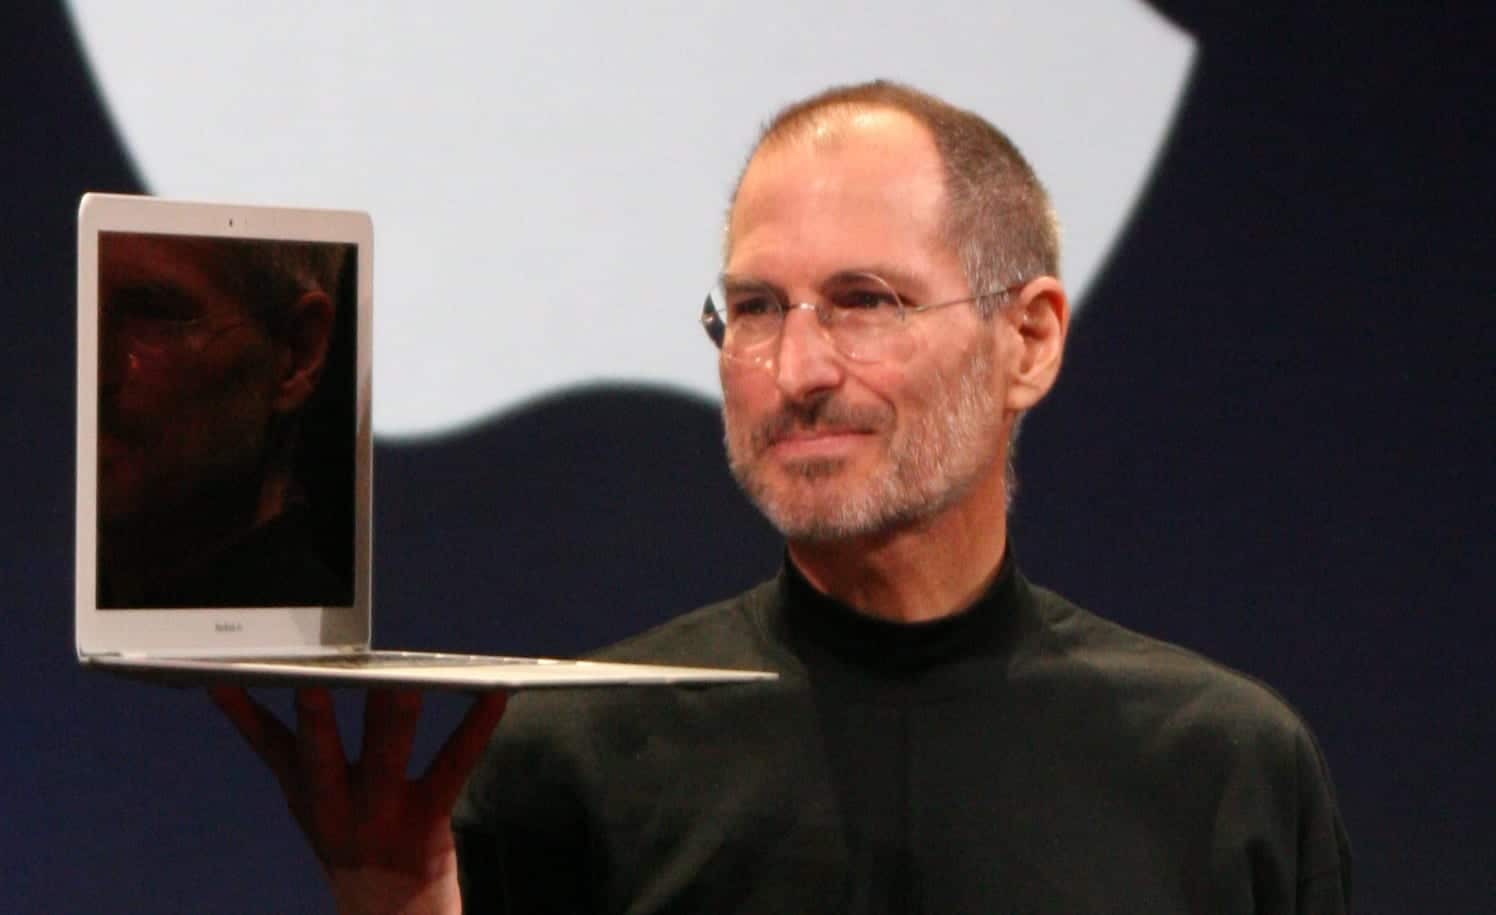 Bonfire Buzz: Entrepreneurial Lessons from Steve Jobs